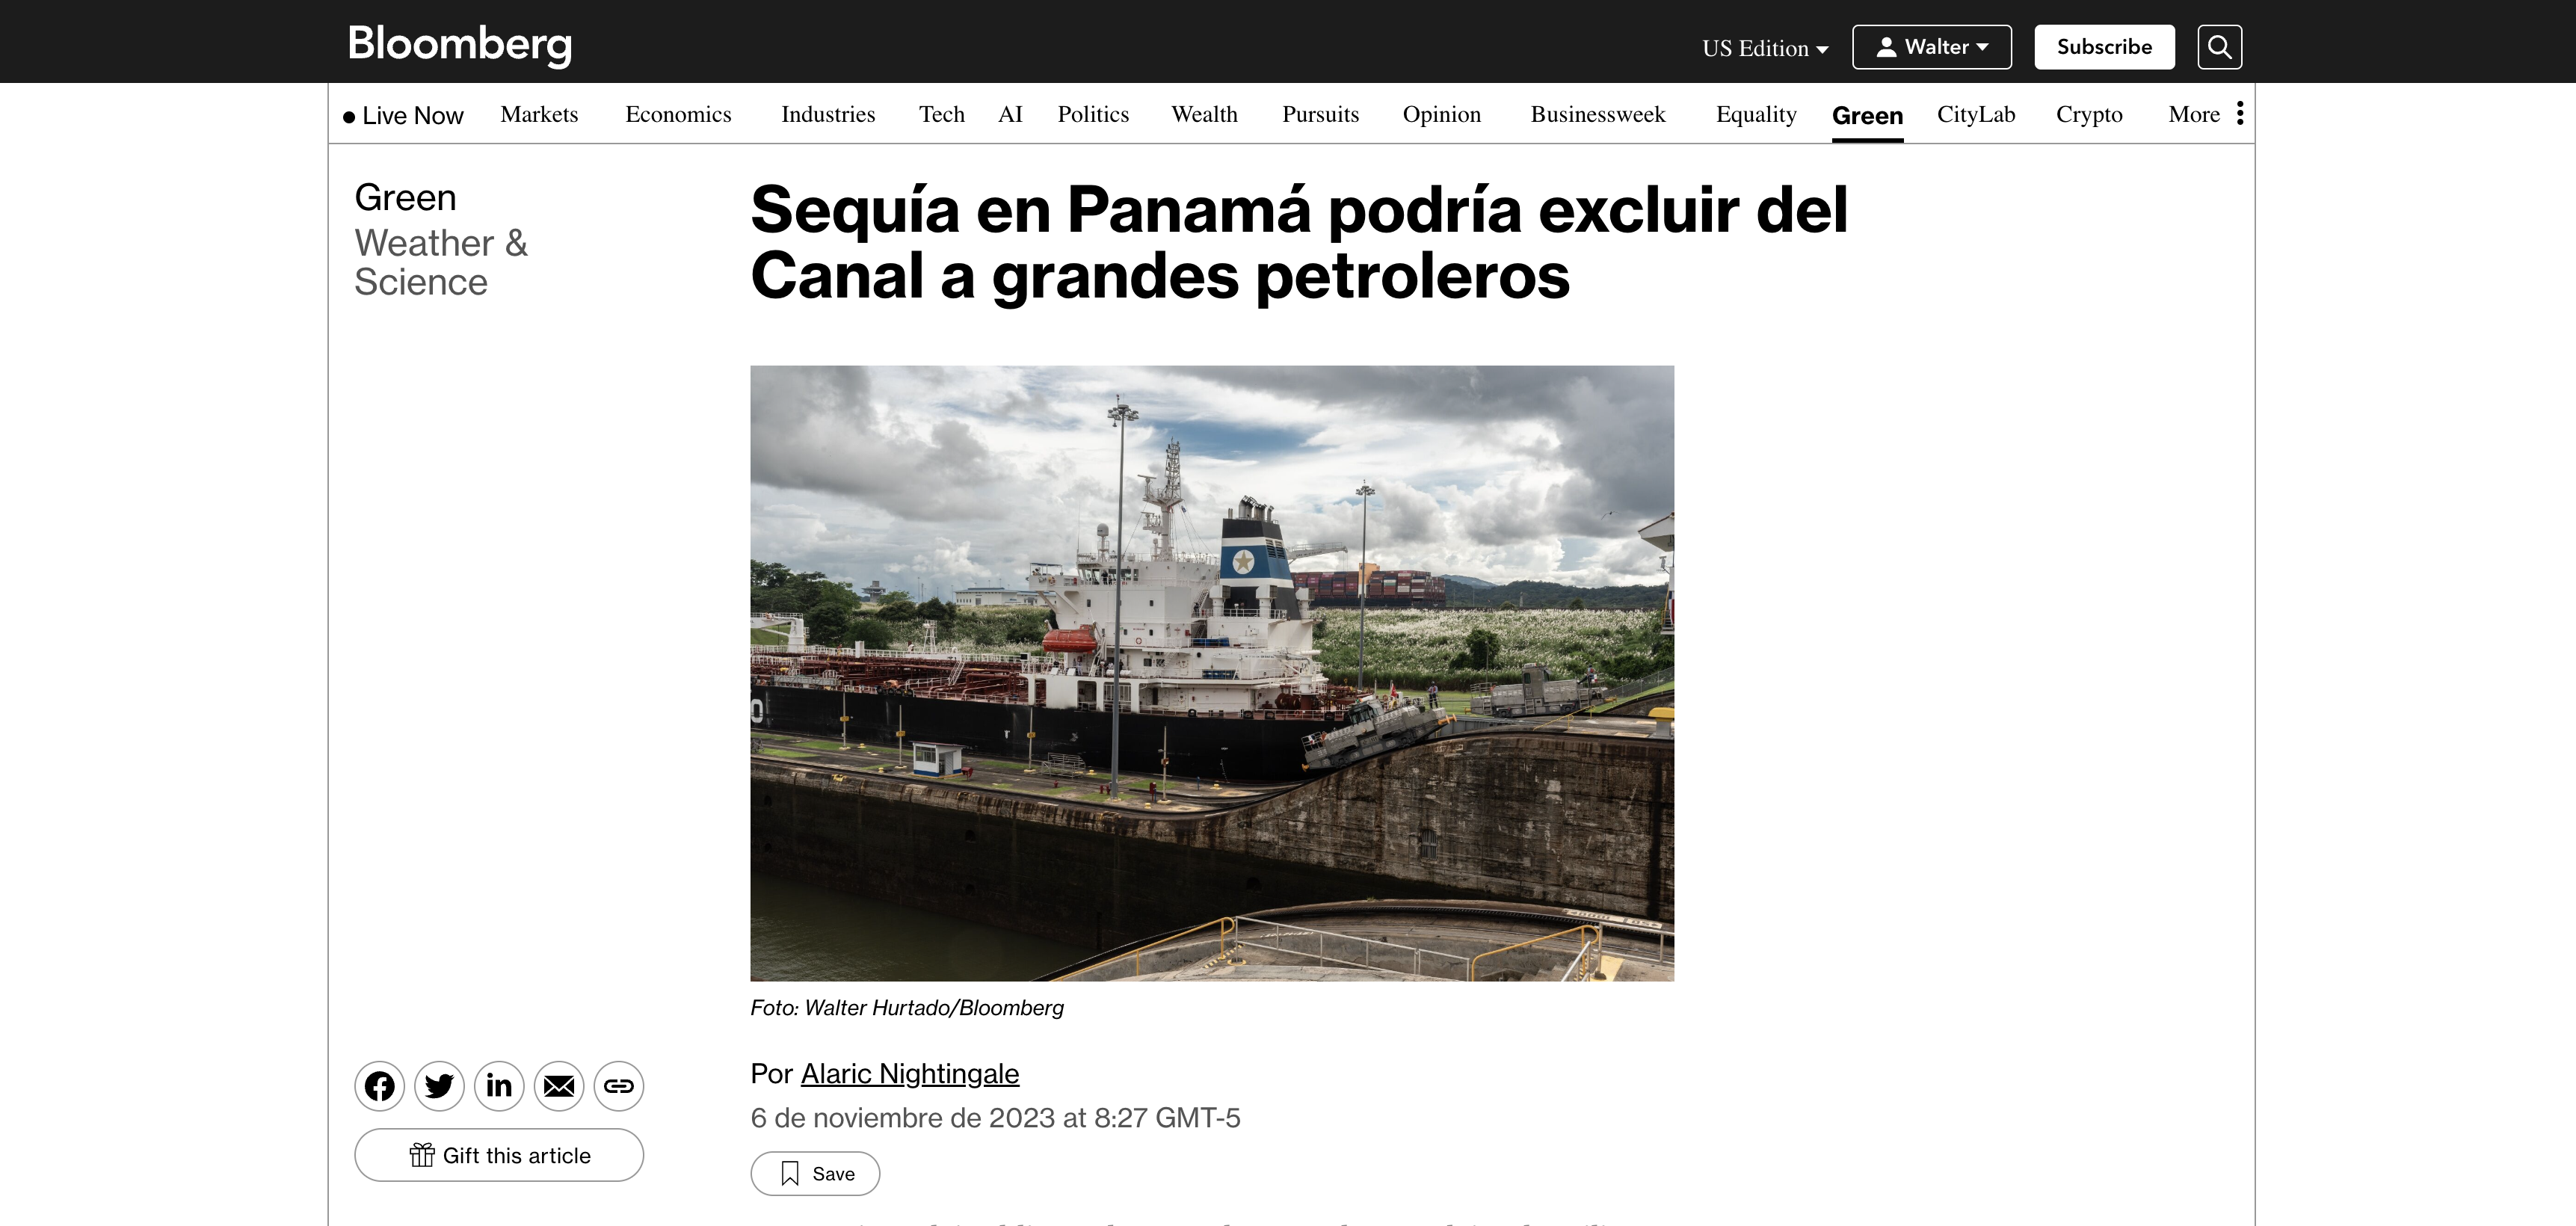  https://www.bloomberg.com/news...del-canal-a-grandes-petroleros 